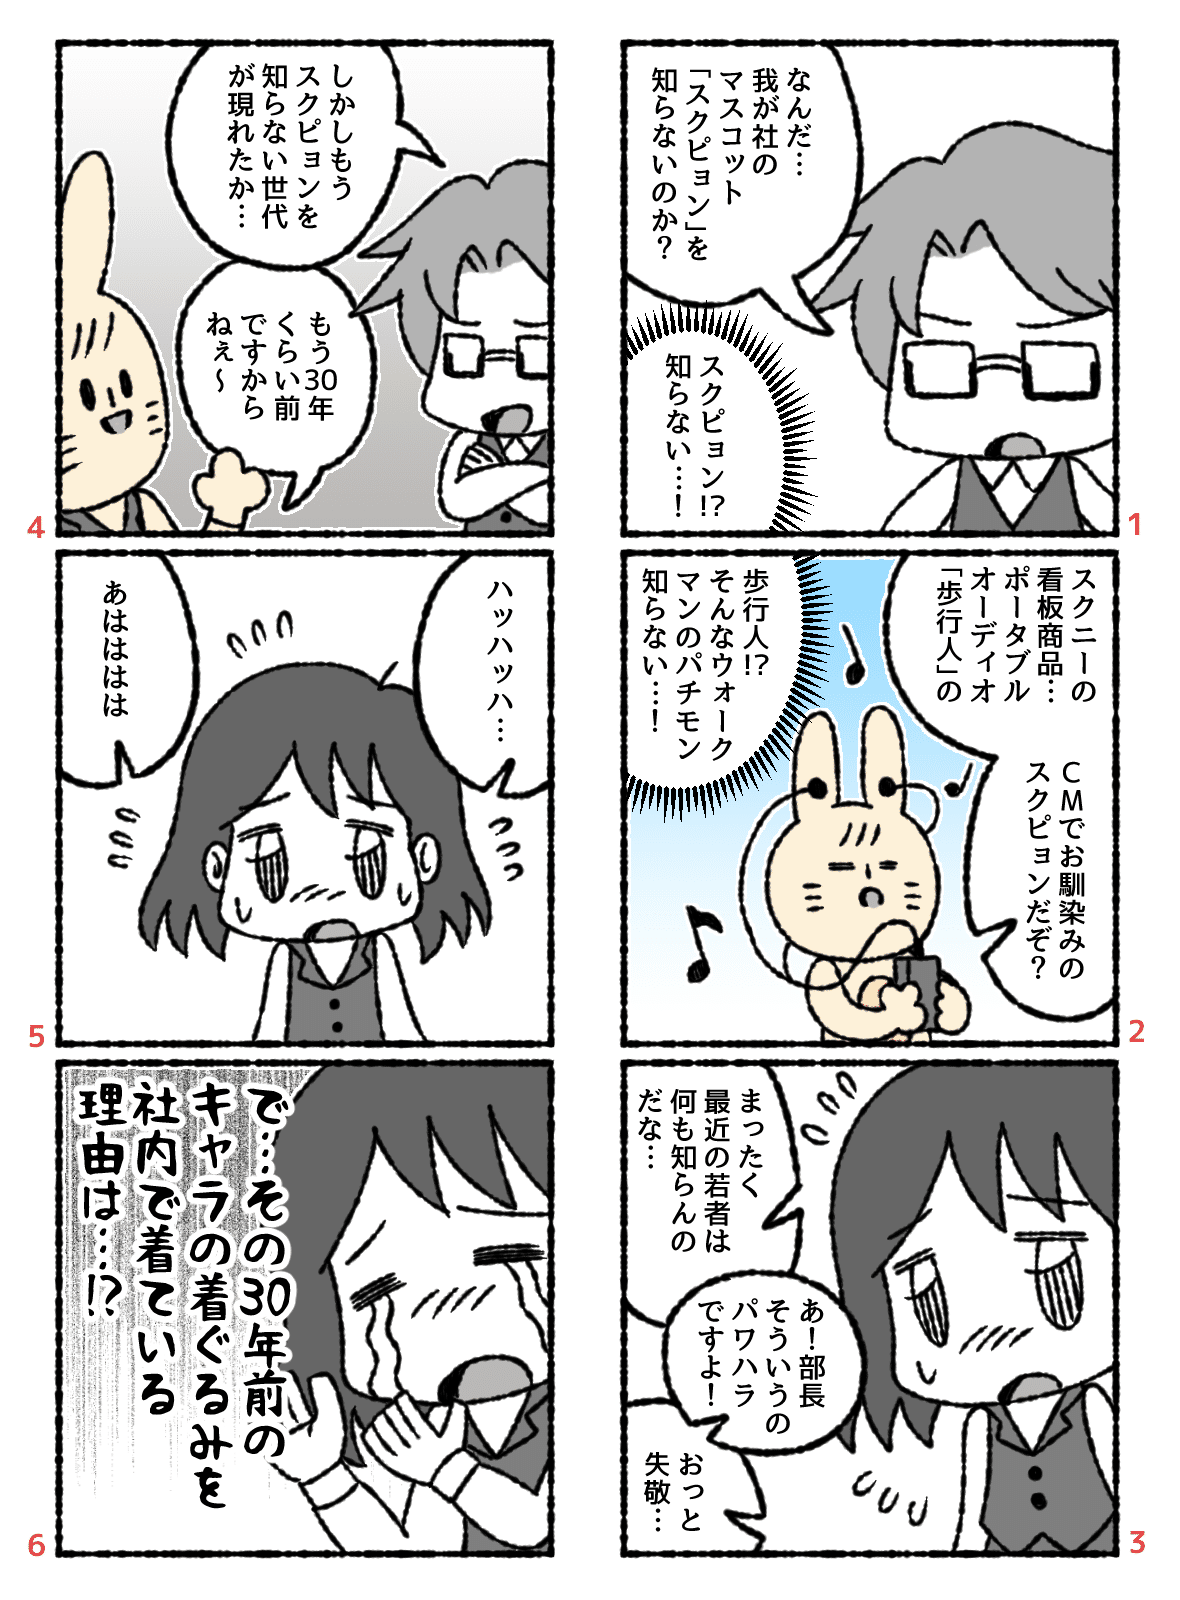 漫画006